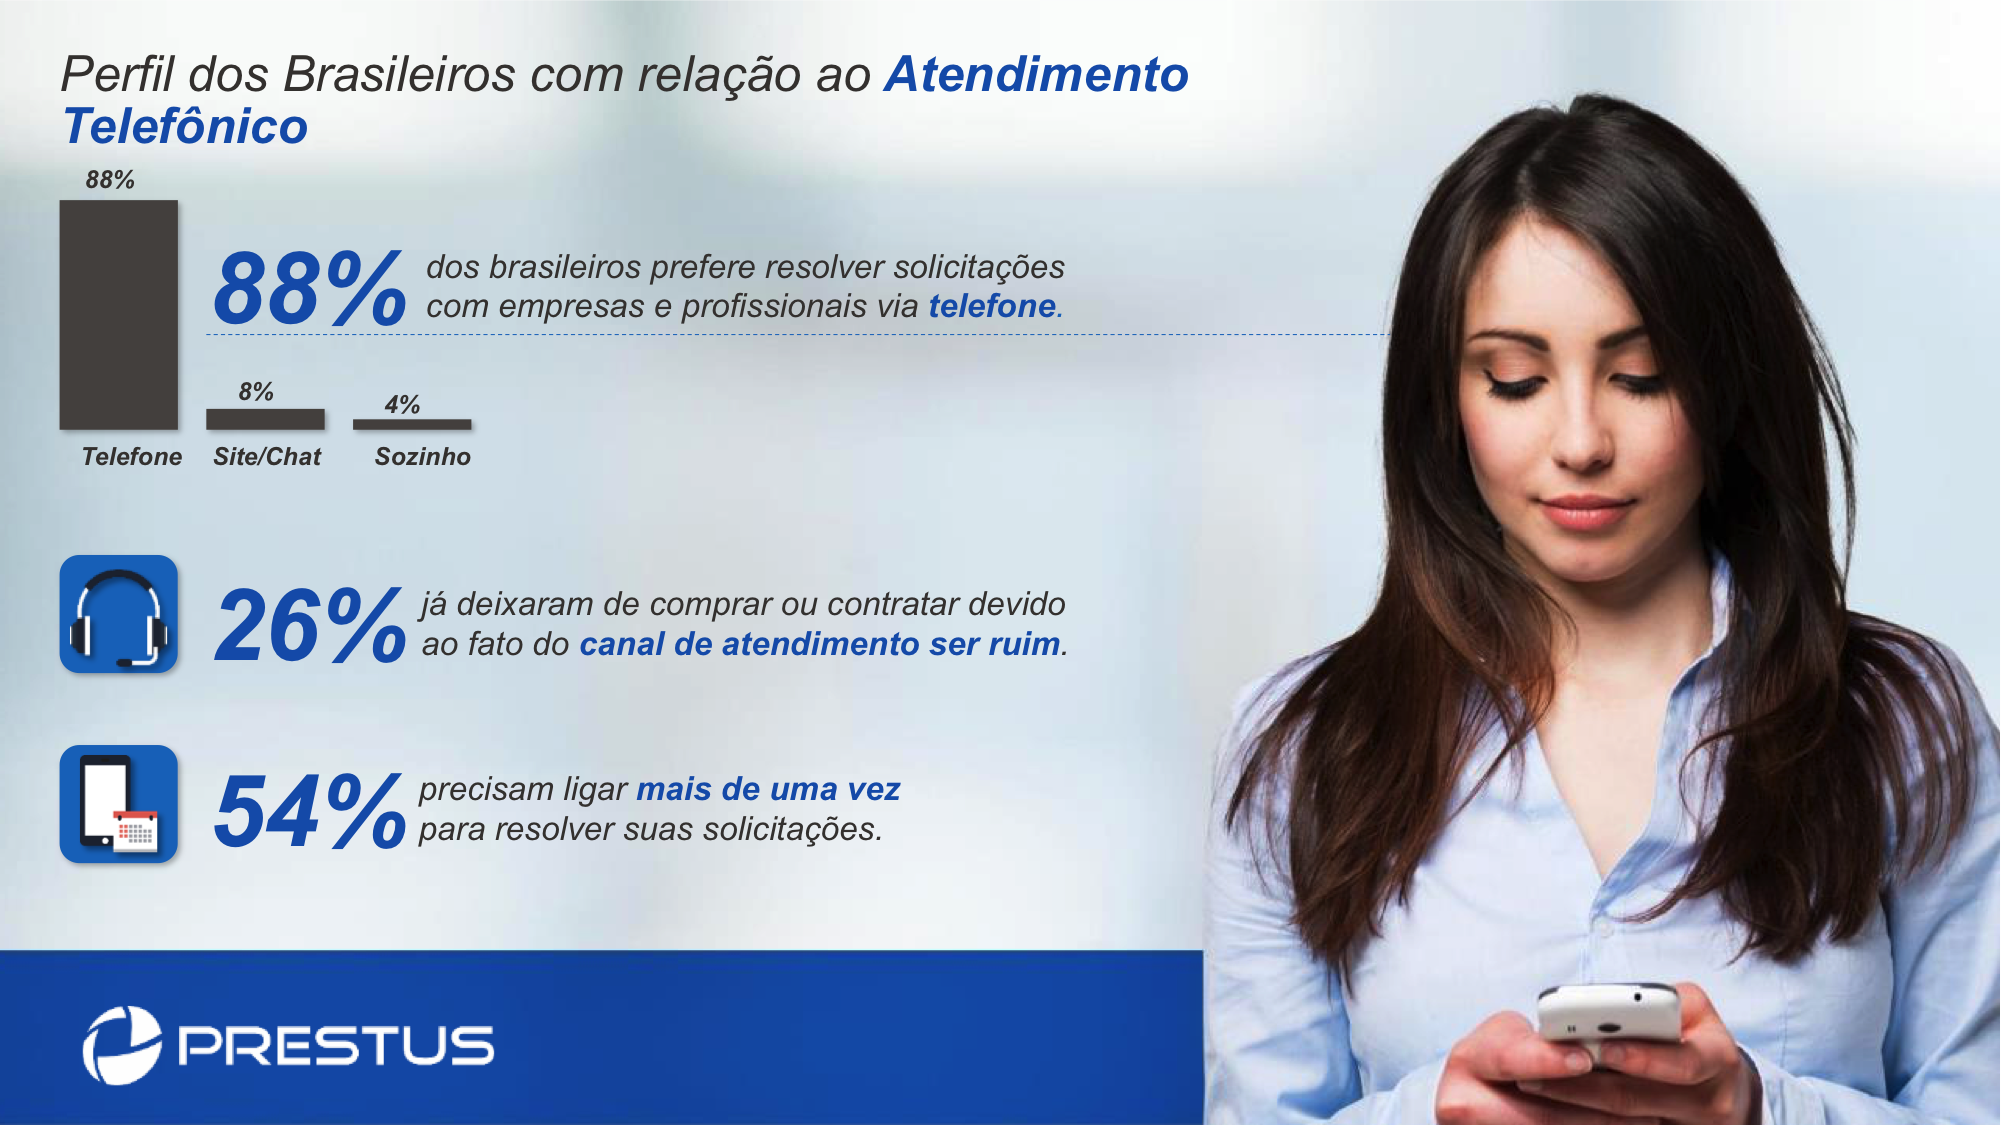 Conheça mais sobre o perfil brasileiro com relação ao atendimento telefônico.